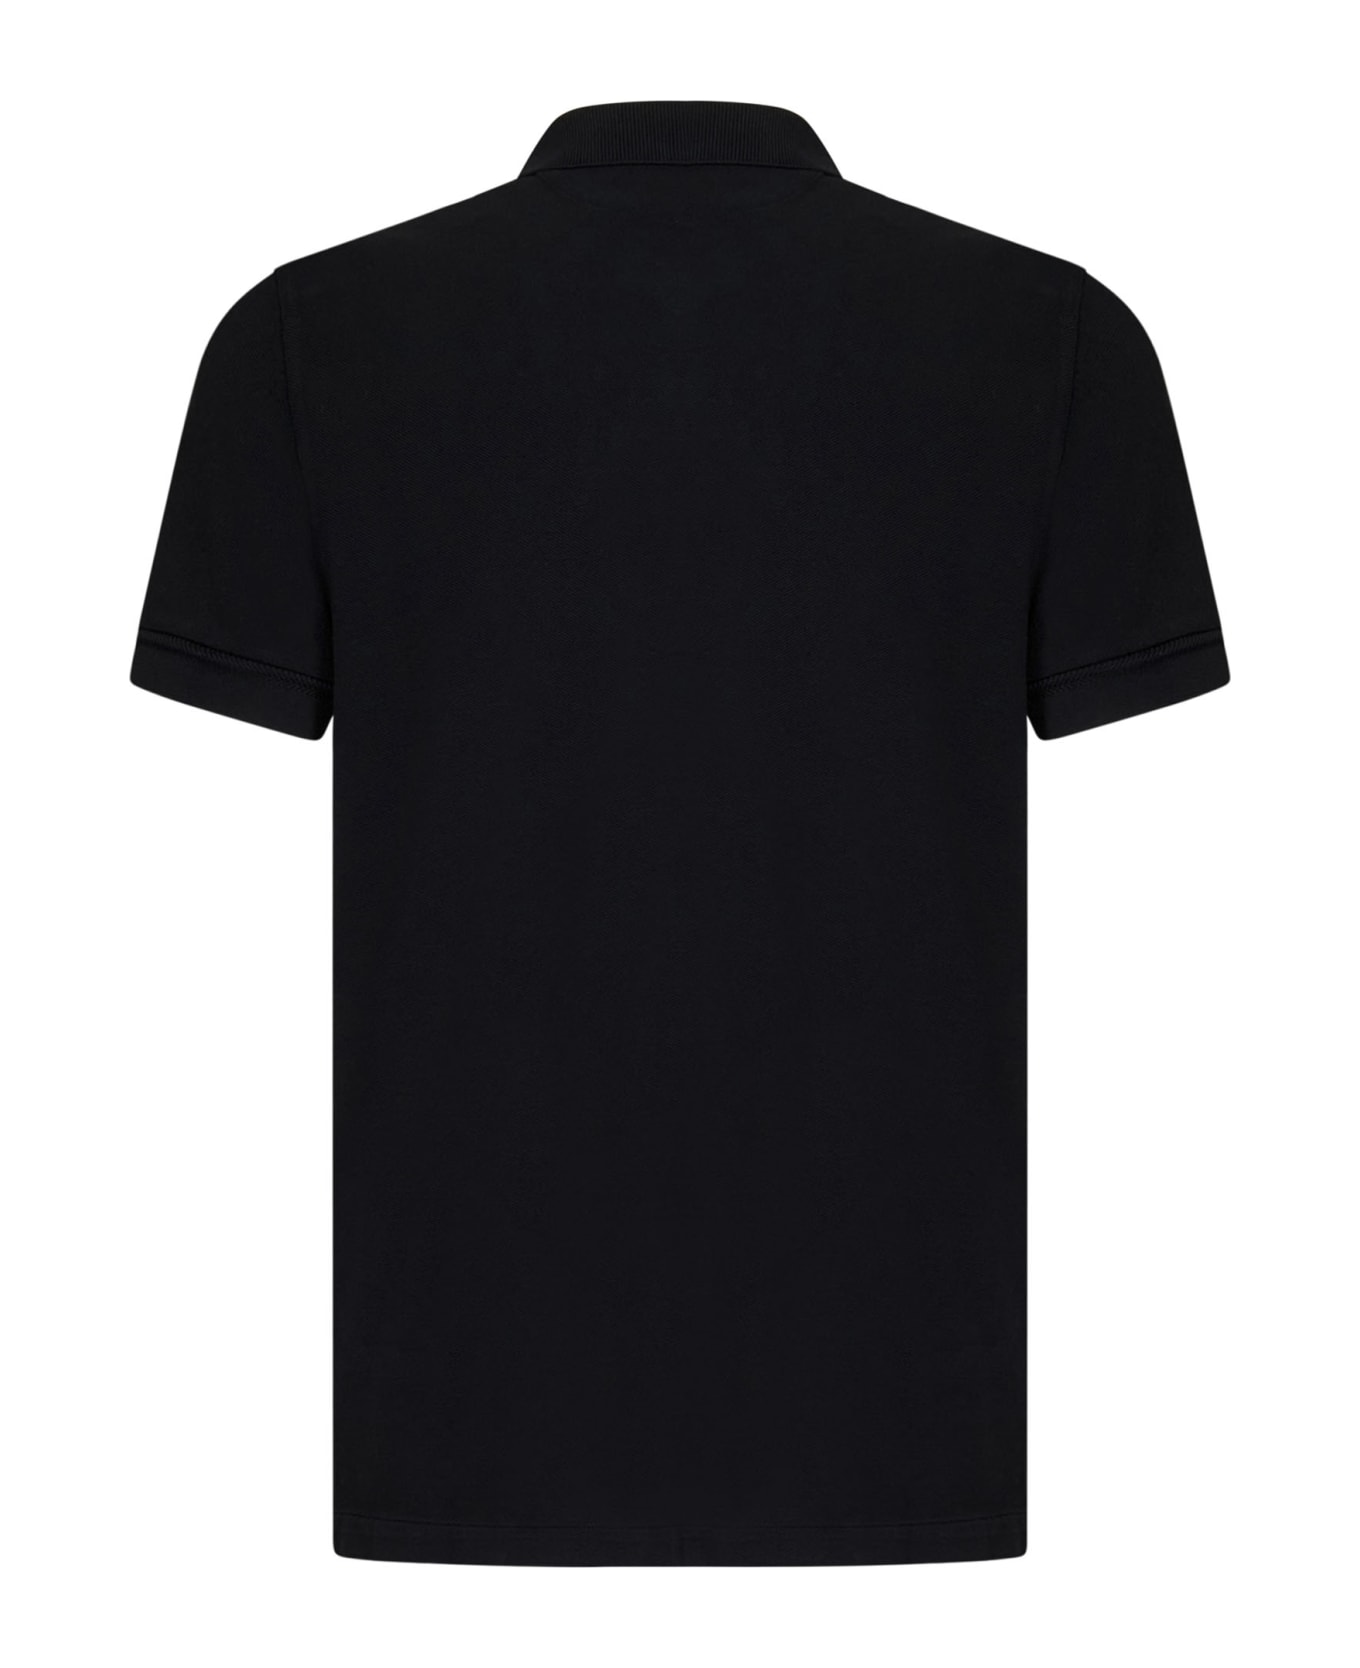 Tom Ford Polo Shirt - Black